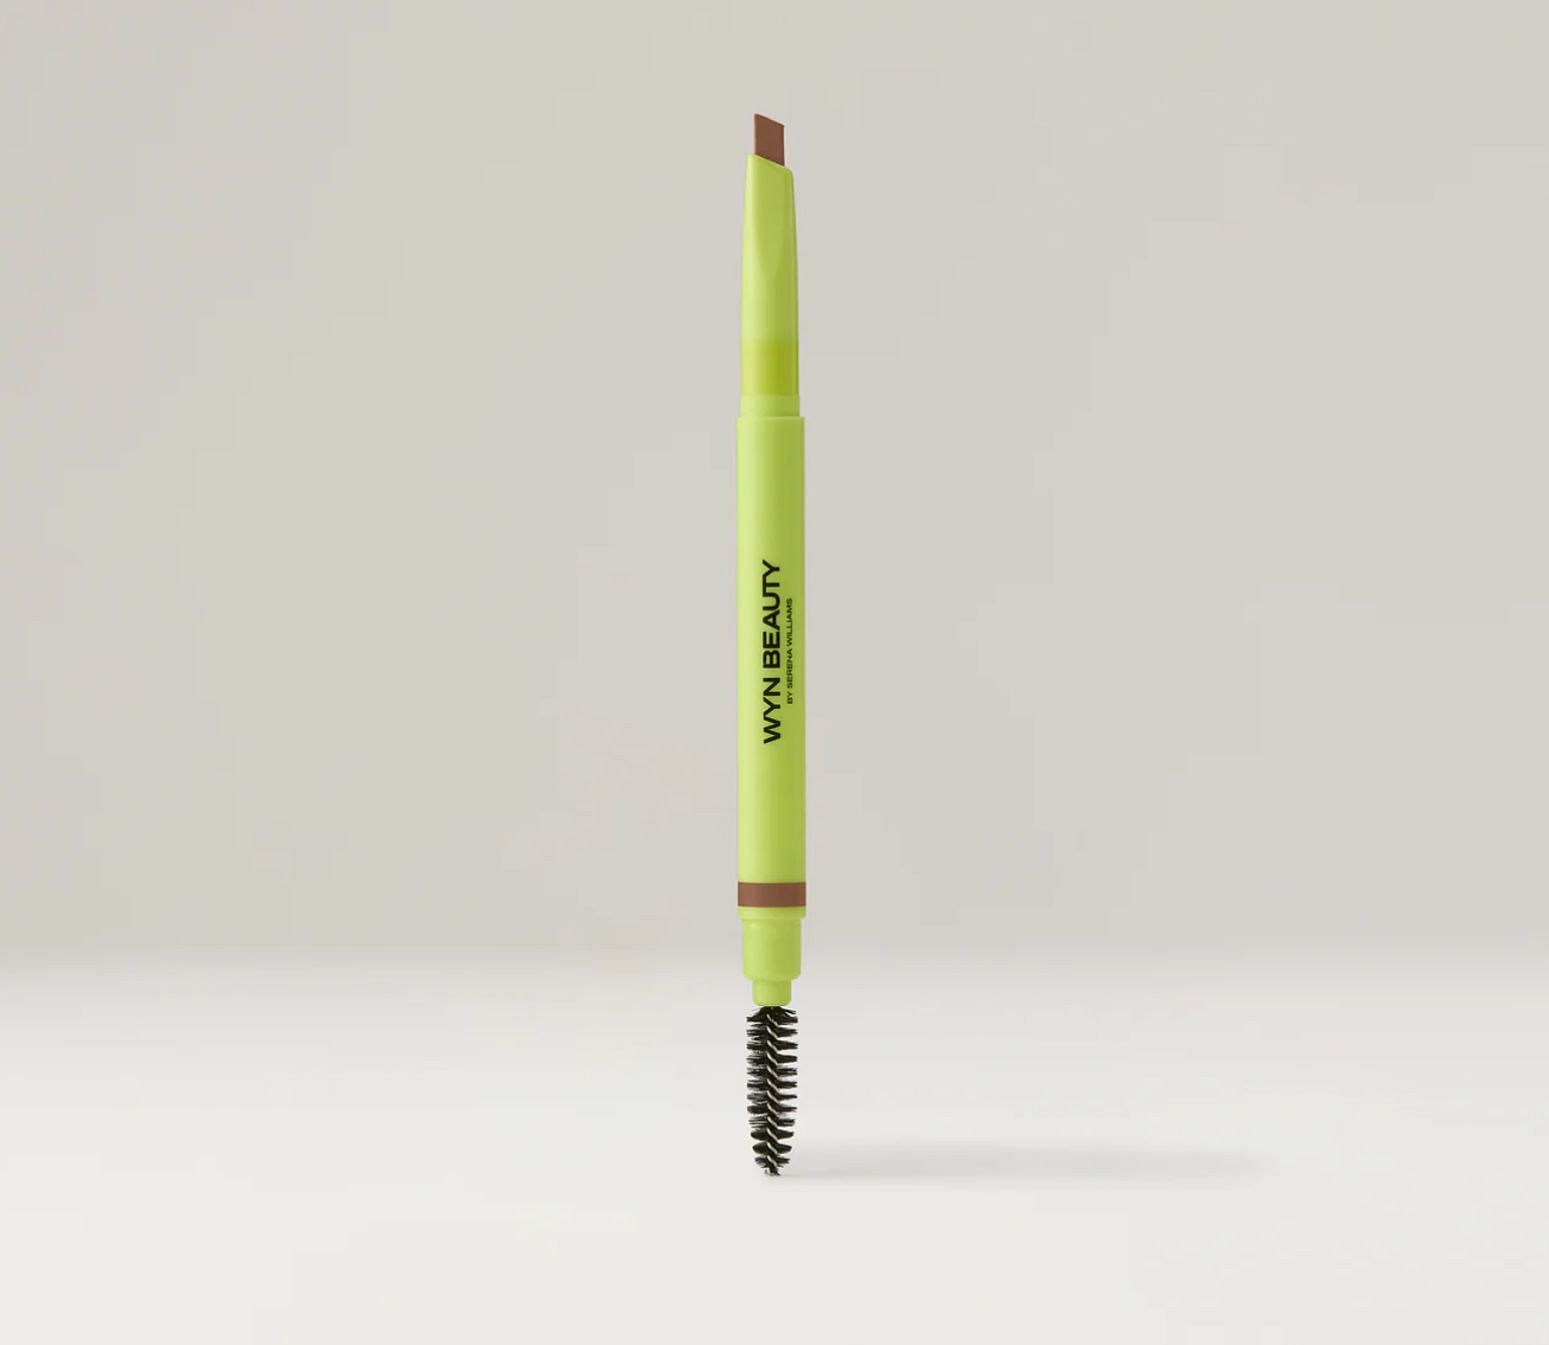 Wyn Beauty Brow Pencil (Image via Wyn Beauty)